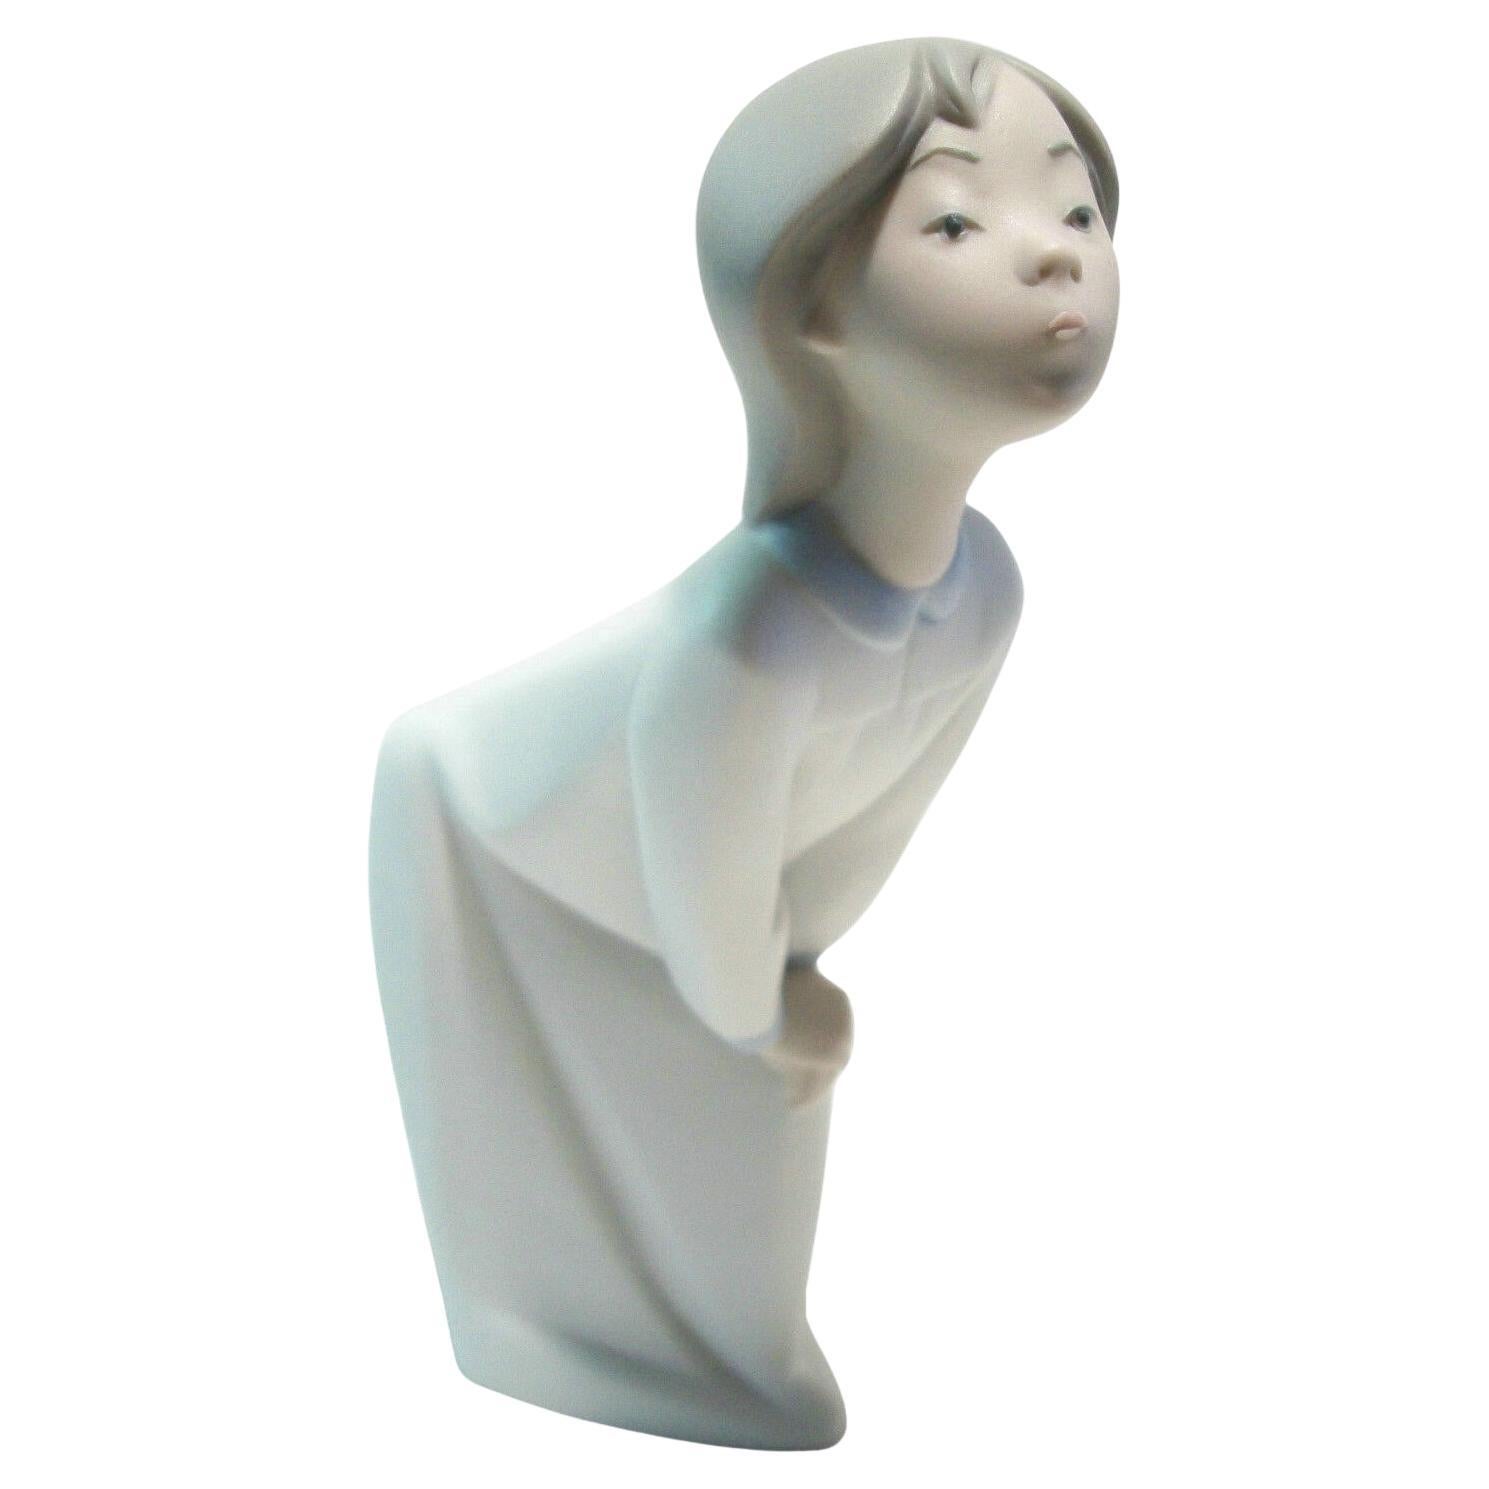 Figurine vintage d'une jeune fille allongée - Finition mate - Espagne - 20e siècle